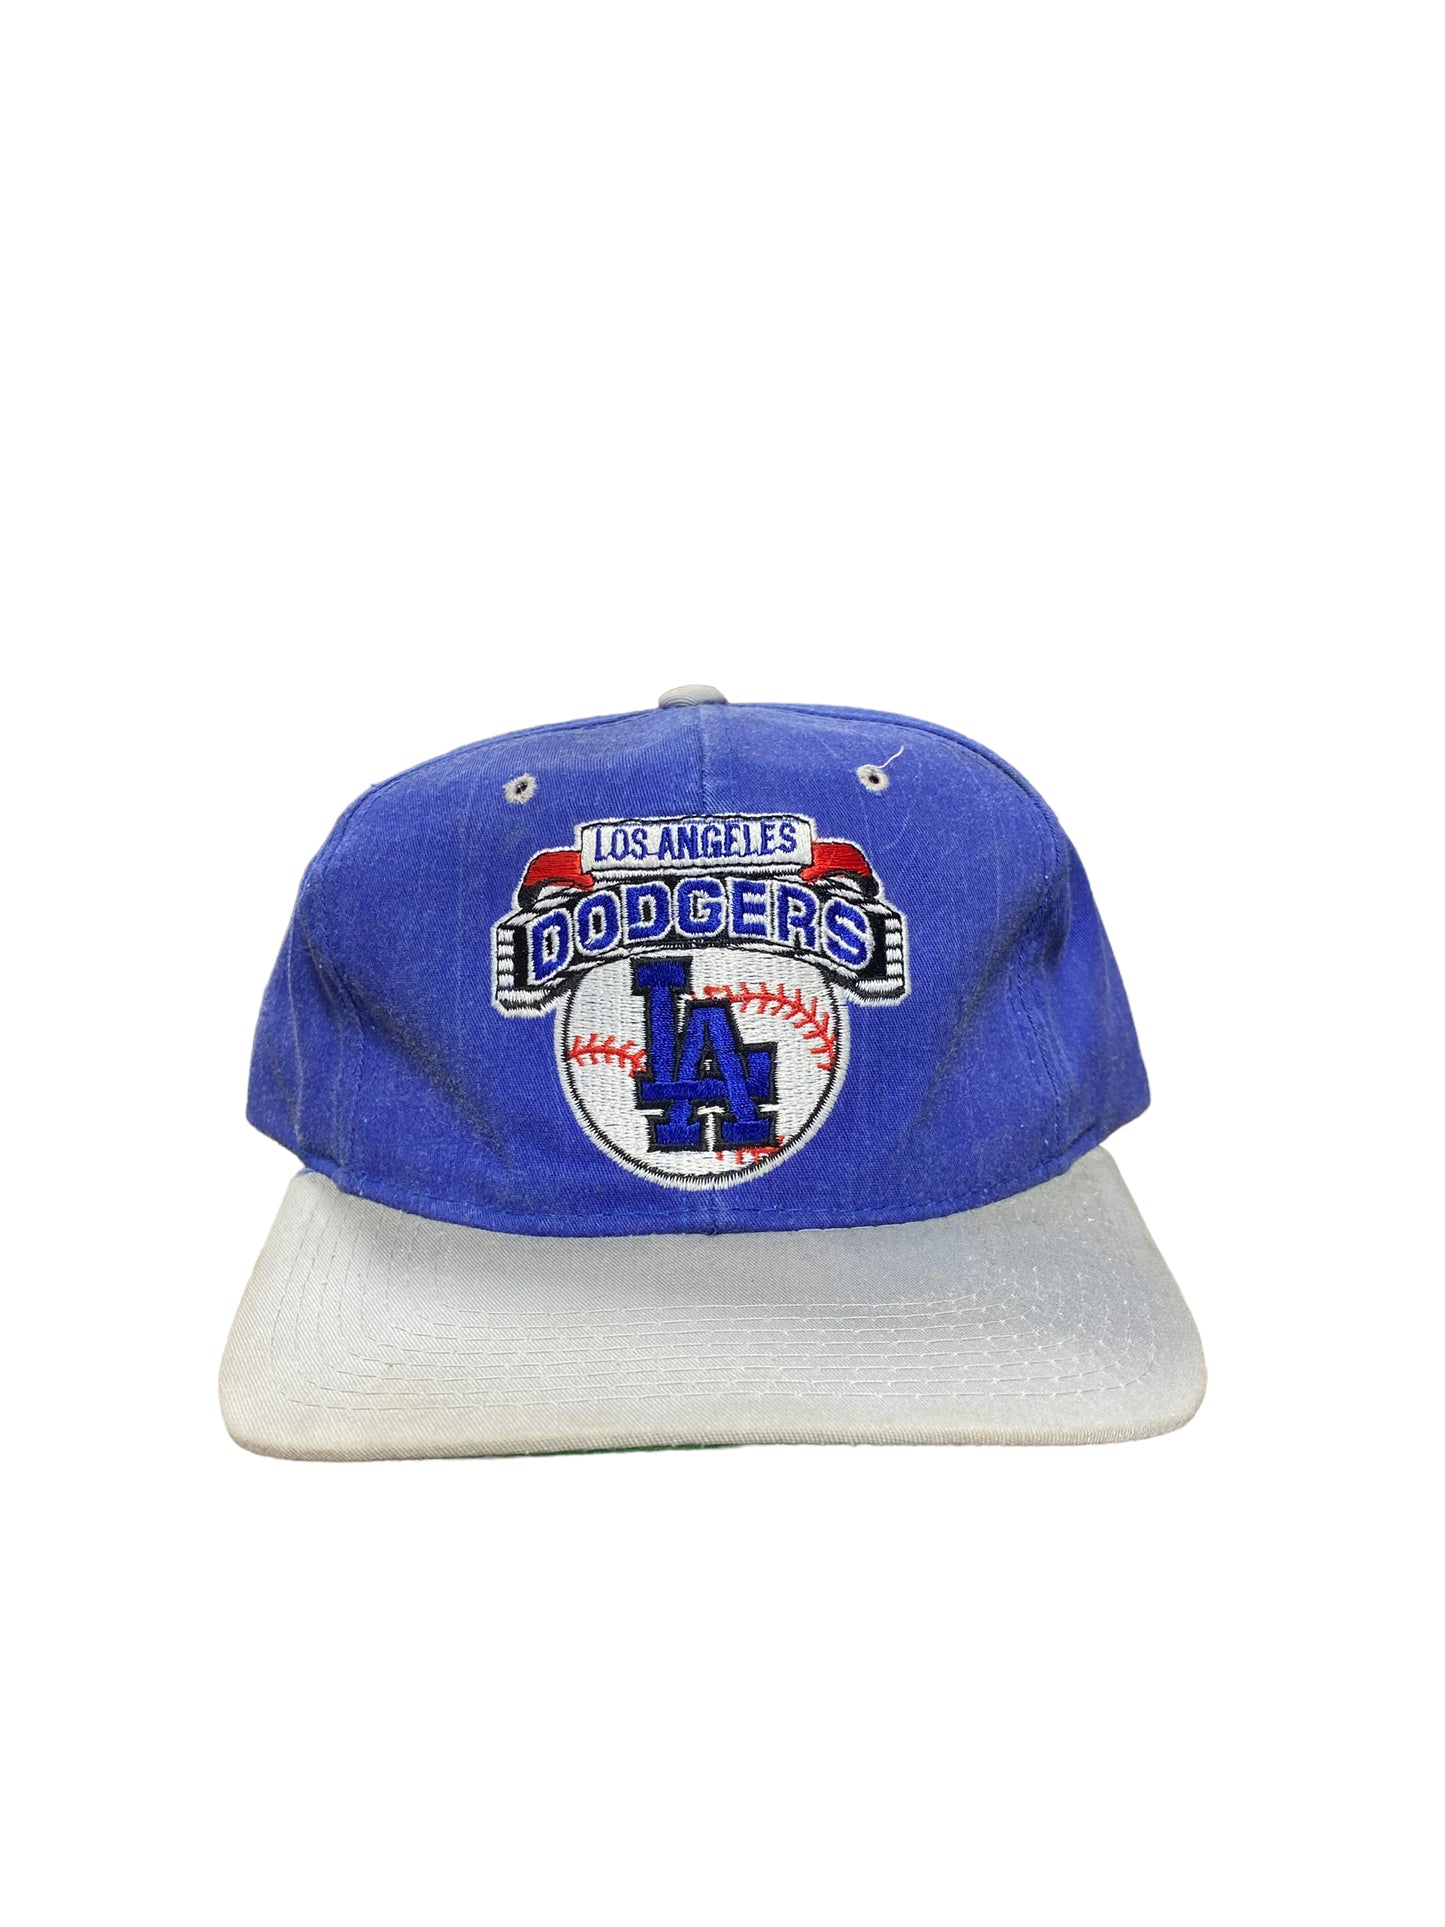 Vintage 90's Starter LA Dodgers Snapback Hat – the basement